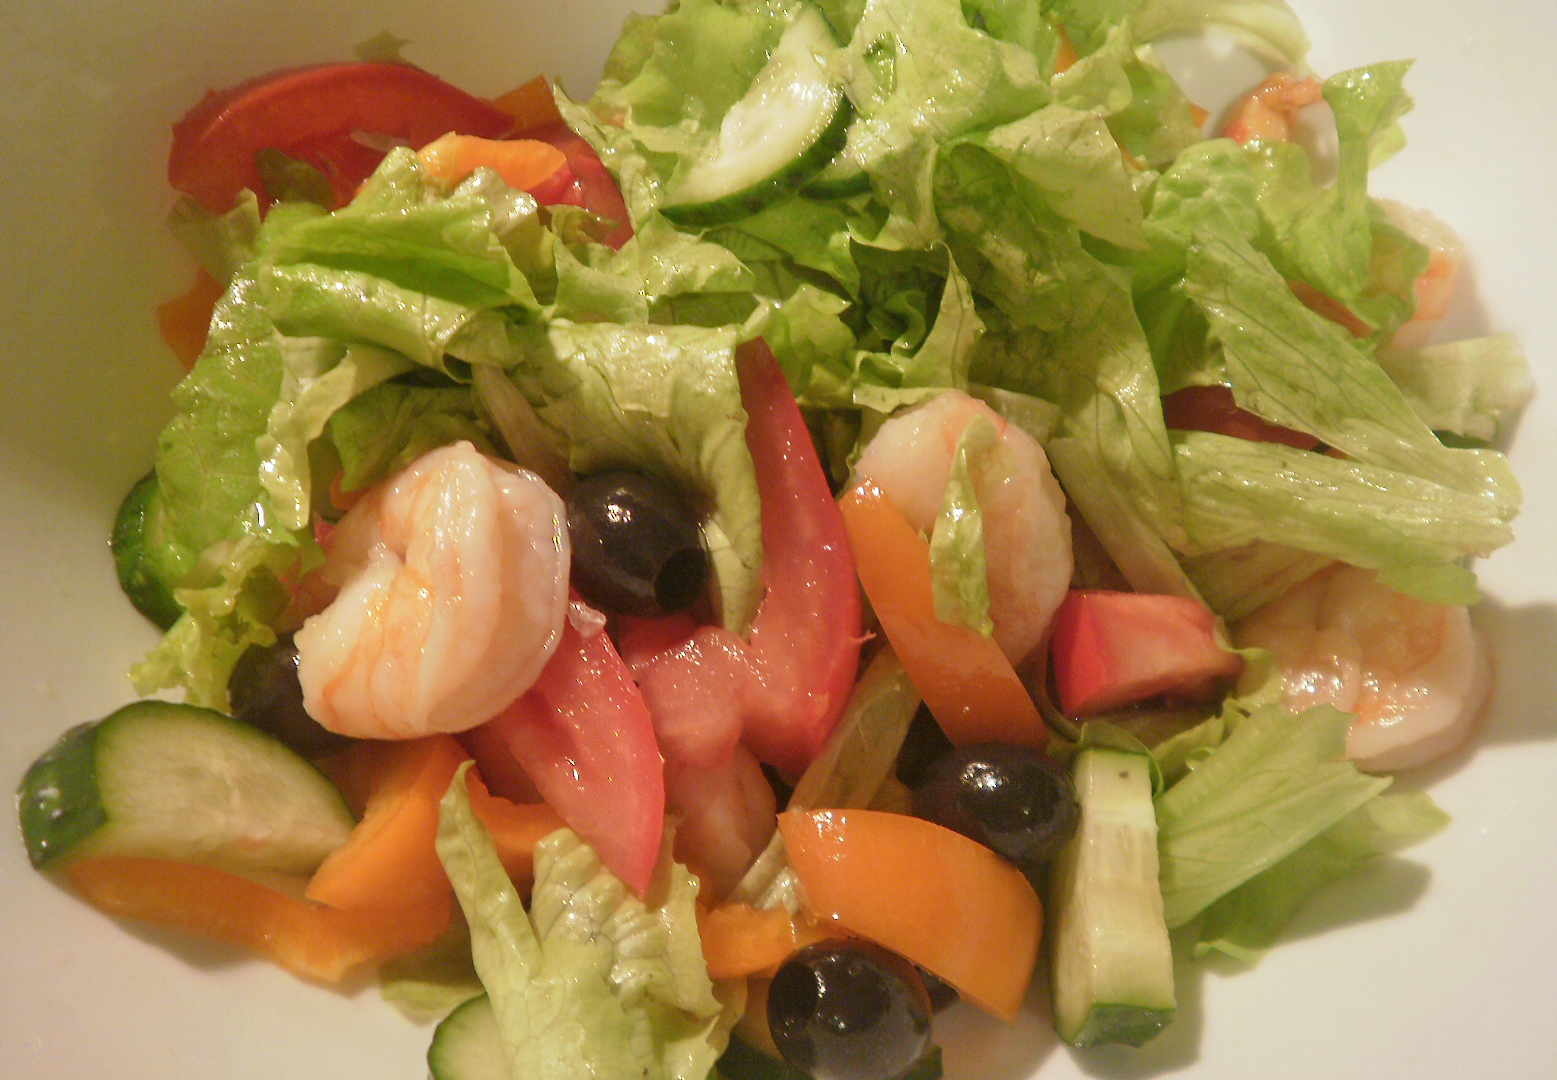 Название салатов из овощей. Овощной салат. Салат из сырых овощей. Салат из свежих овощей с маслом. Салат овощной домашний.